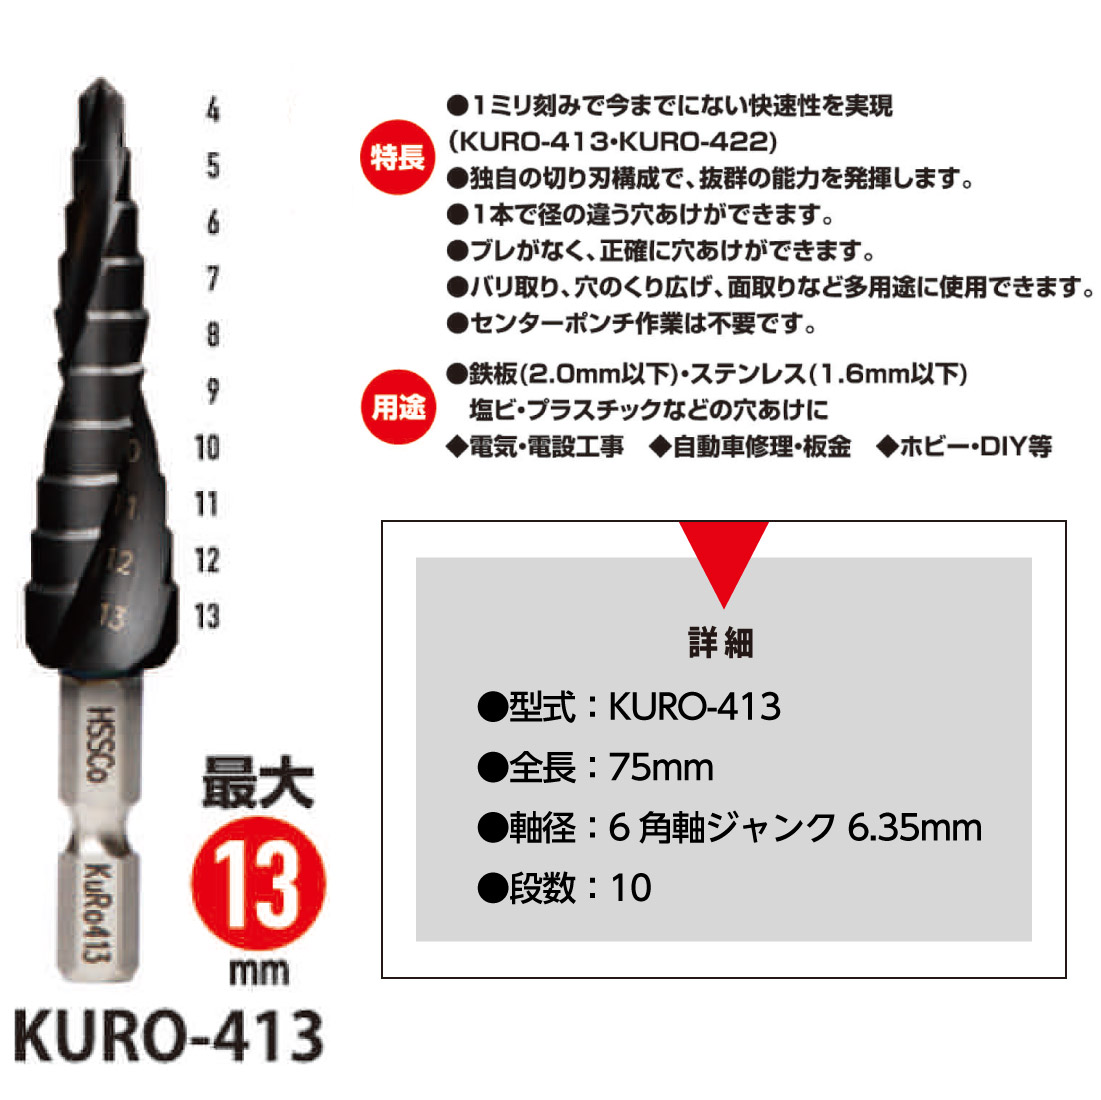 KURO-413 ウイニングボアー KURO413 WB クロステップドリル